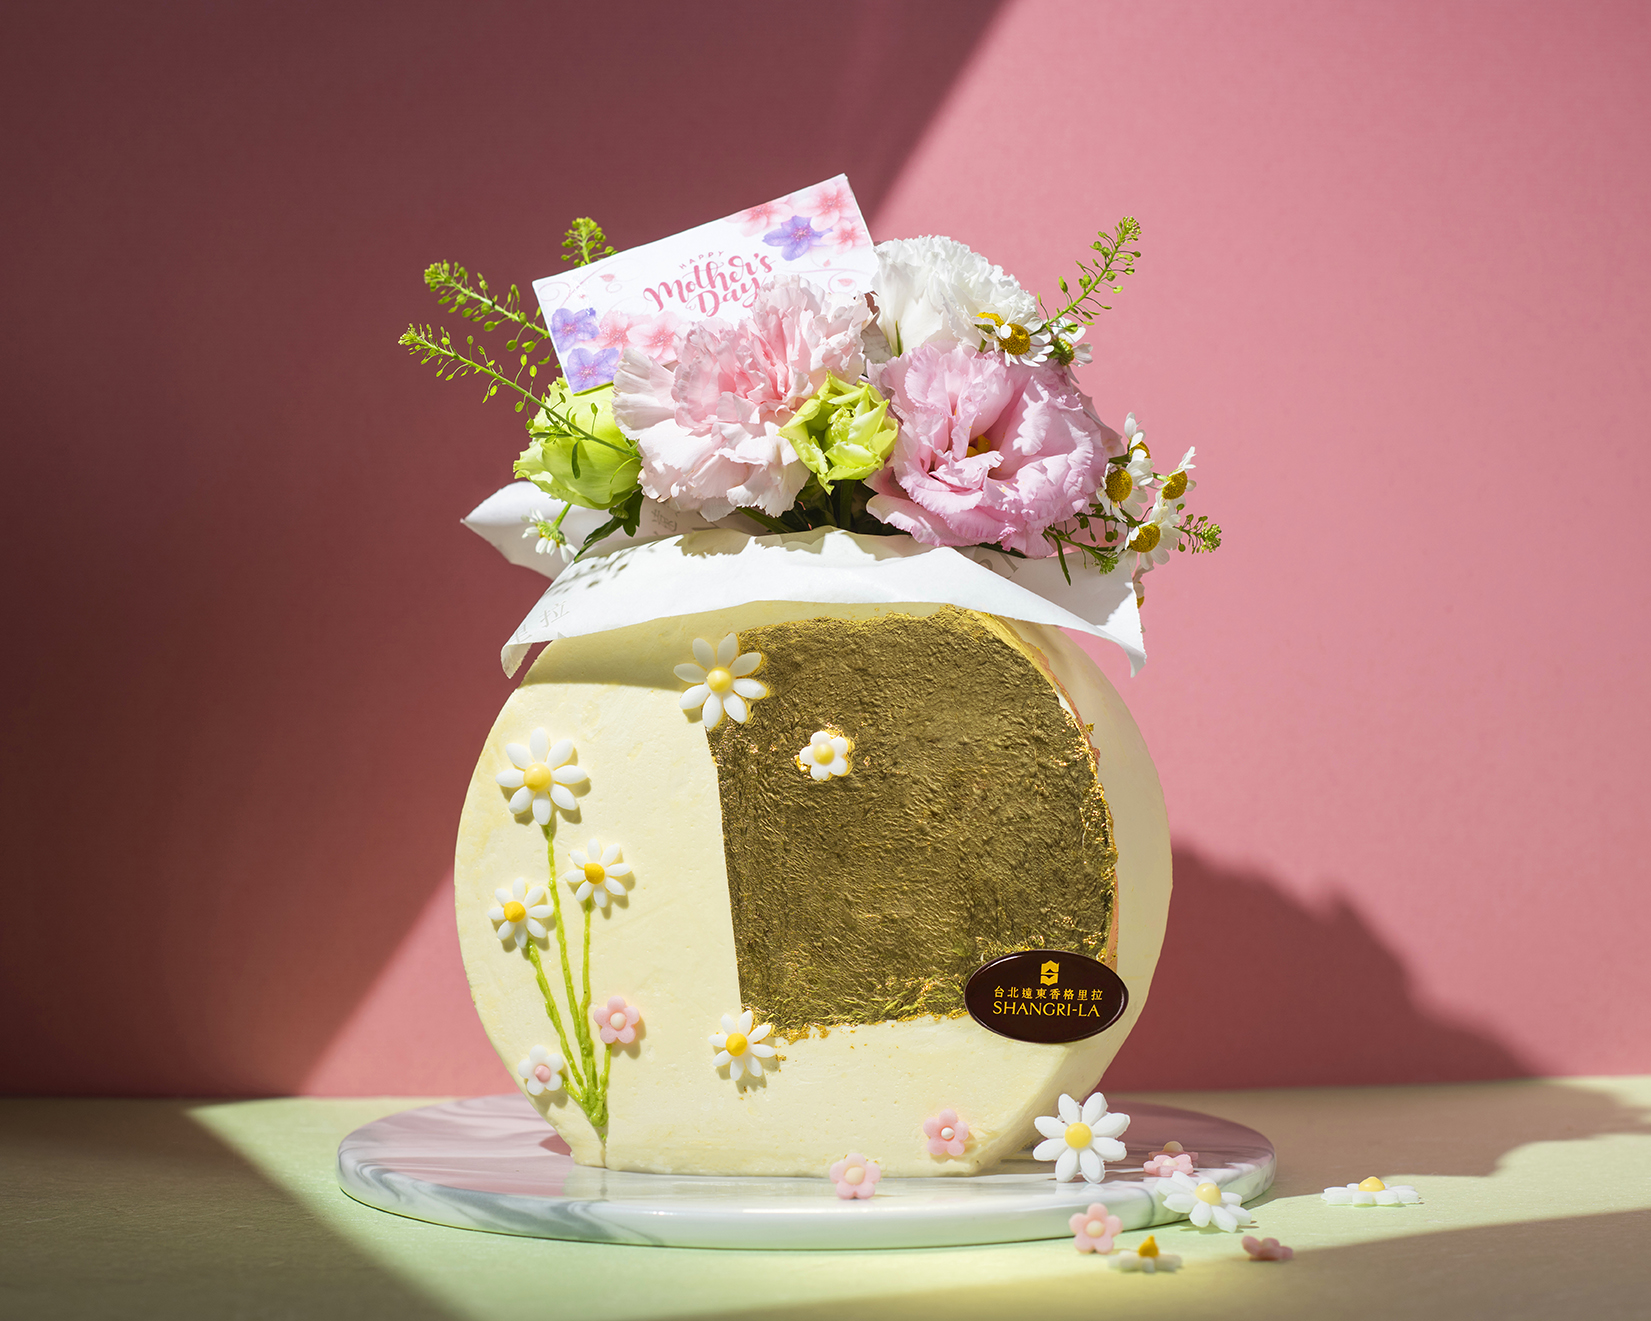 台北远东香格里拉母亲节限定、鲜花装饰花瓶造型的「馨之女王」。7吋2,980元。图/台北远东香格里拉提供